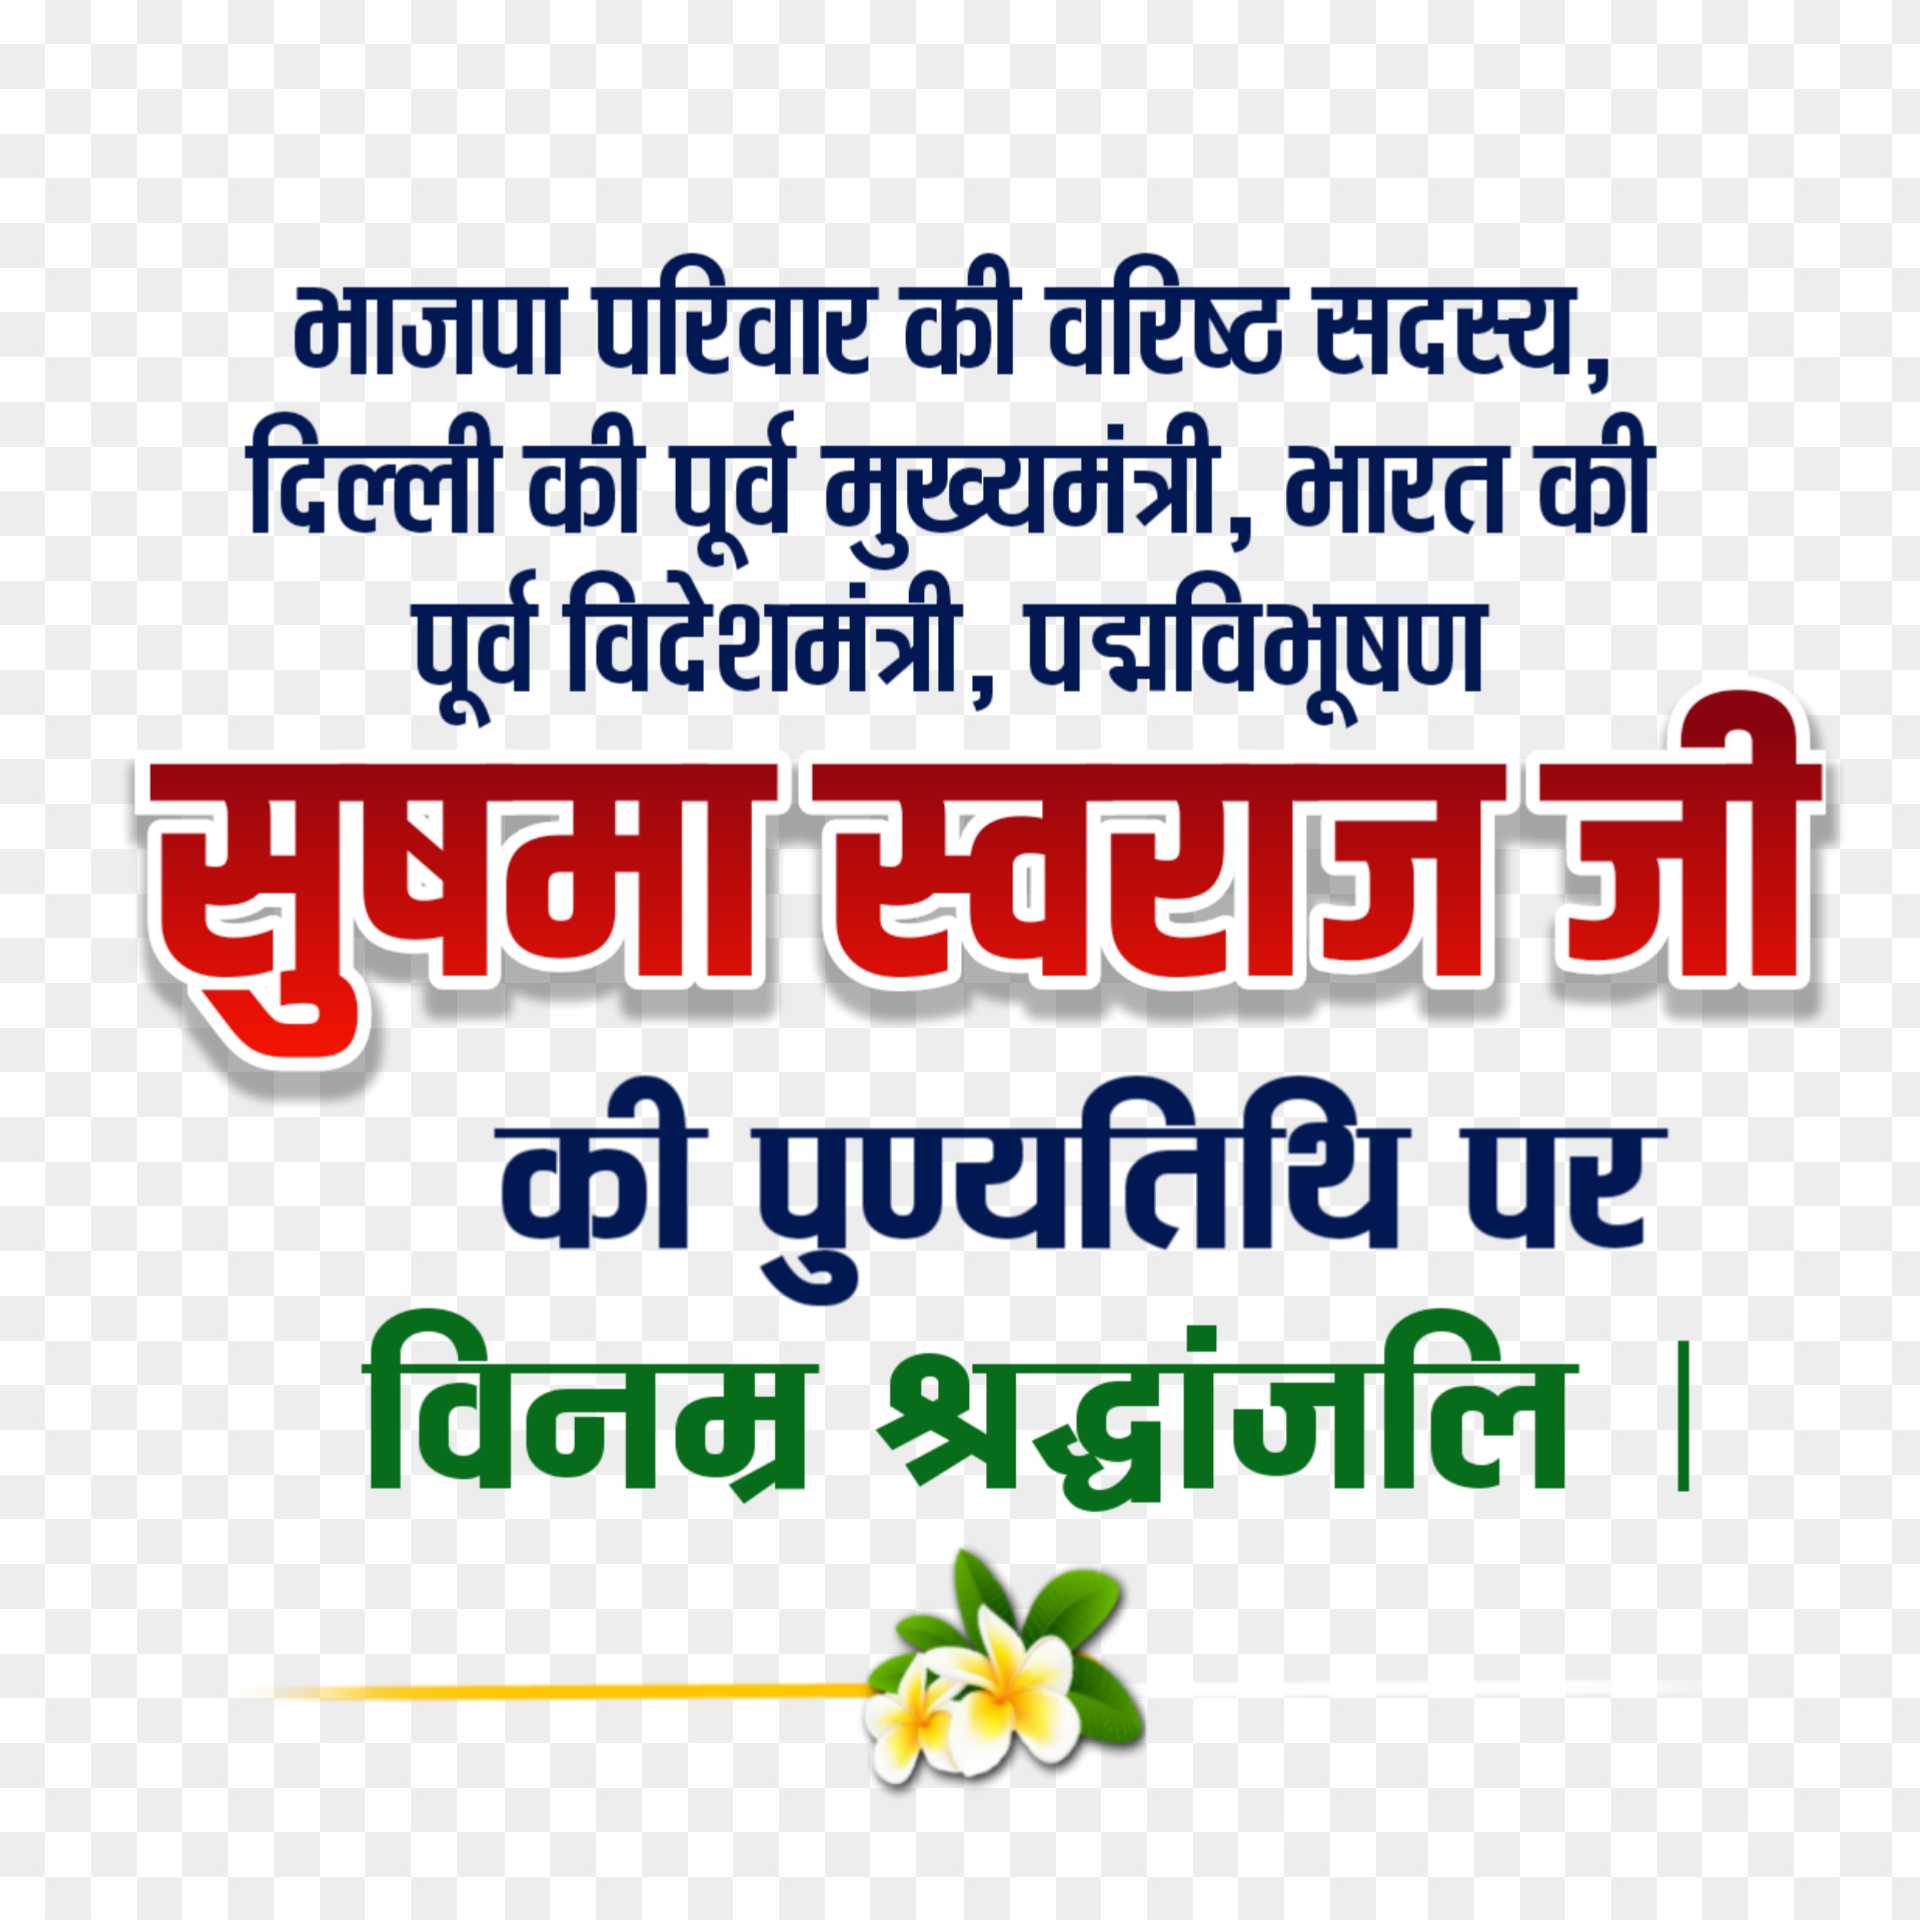 Sushma Swaraj punyatithi banner editing text png images 